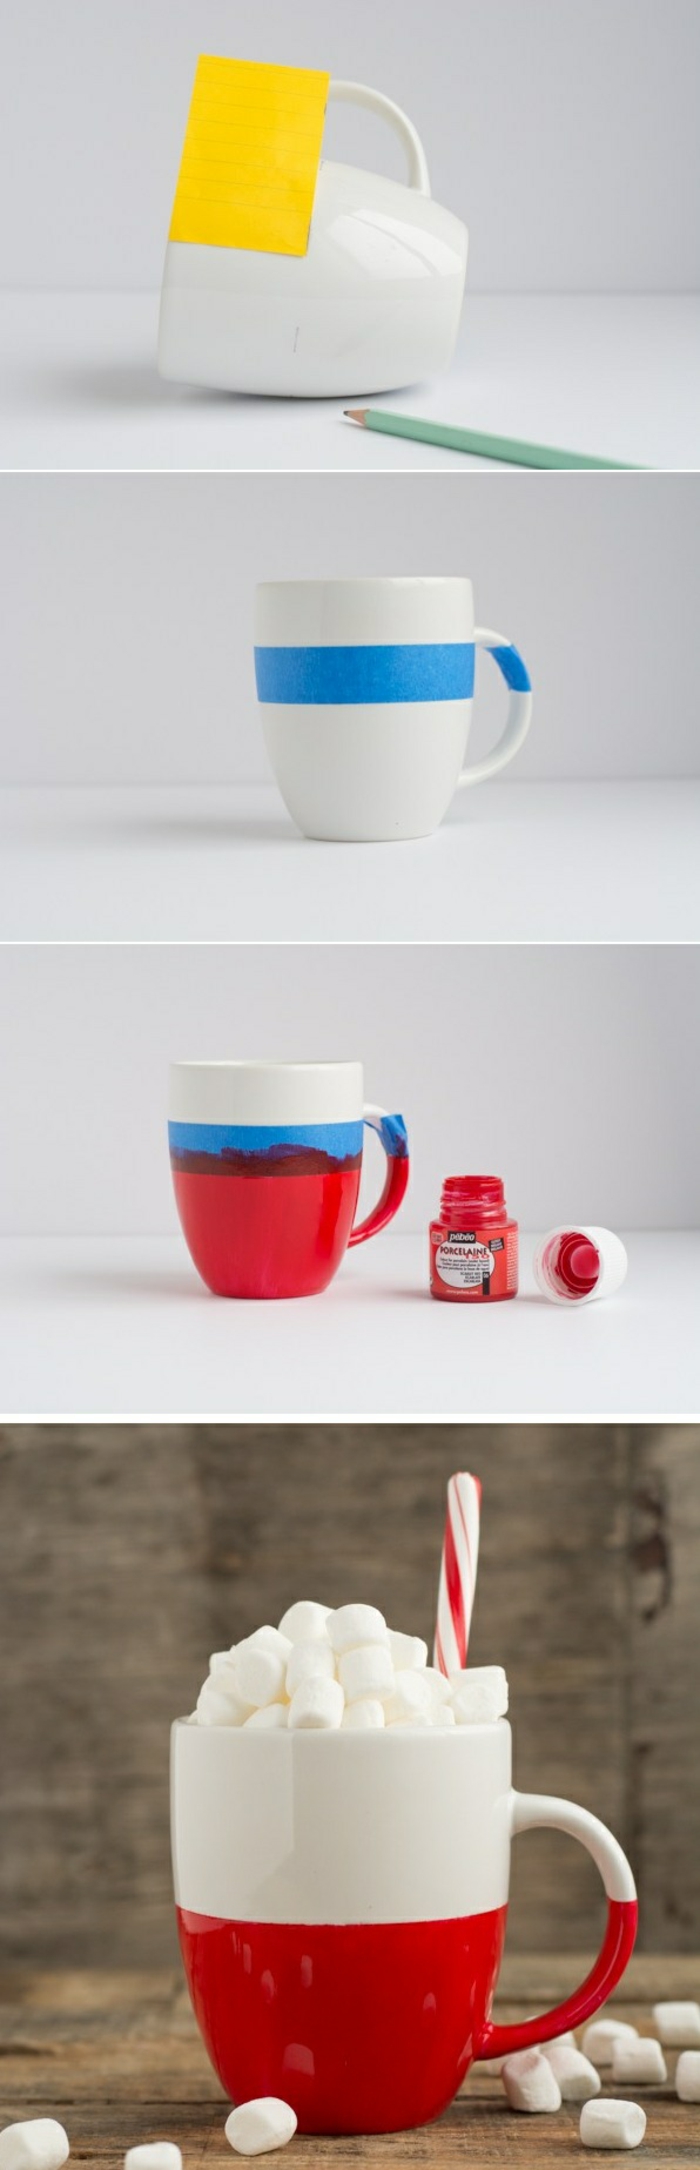 pas à pas comment personnaliser un mug, modèle de tasse blanche et rouge DIY, activité manuelle facile et rapide